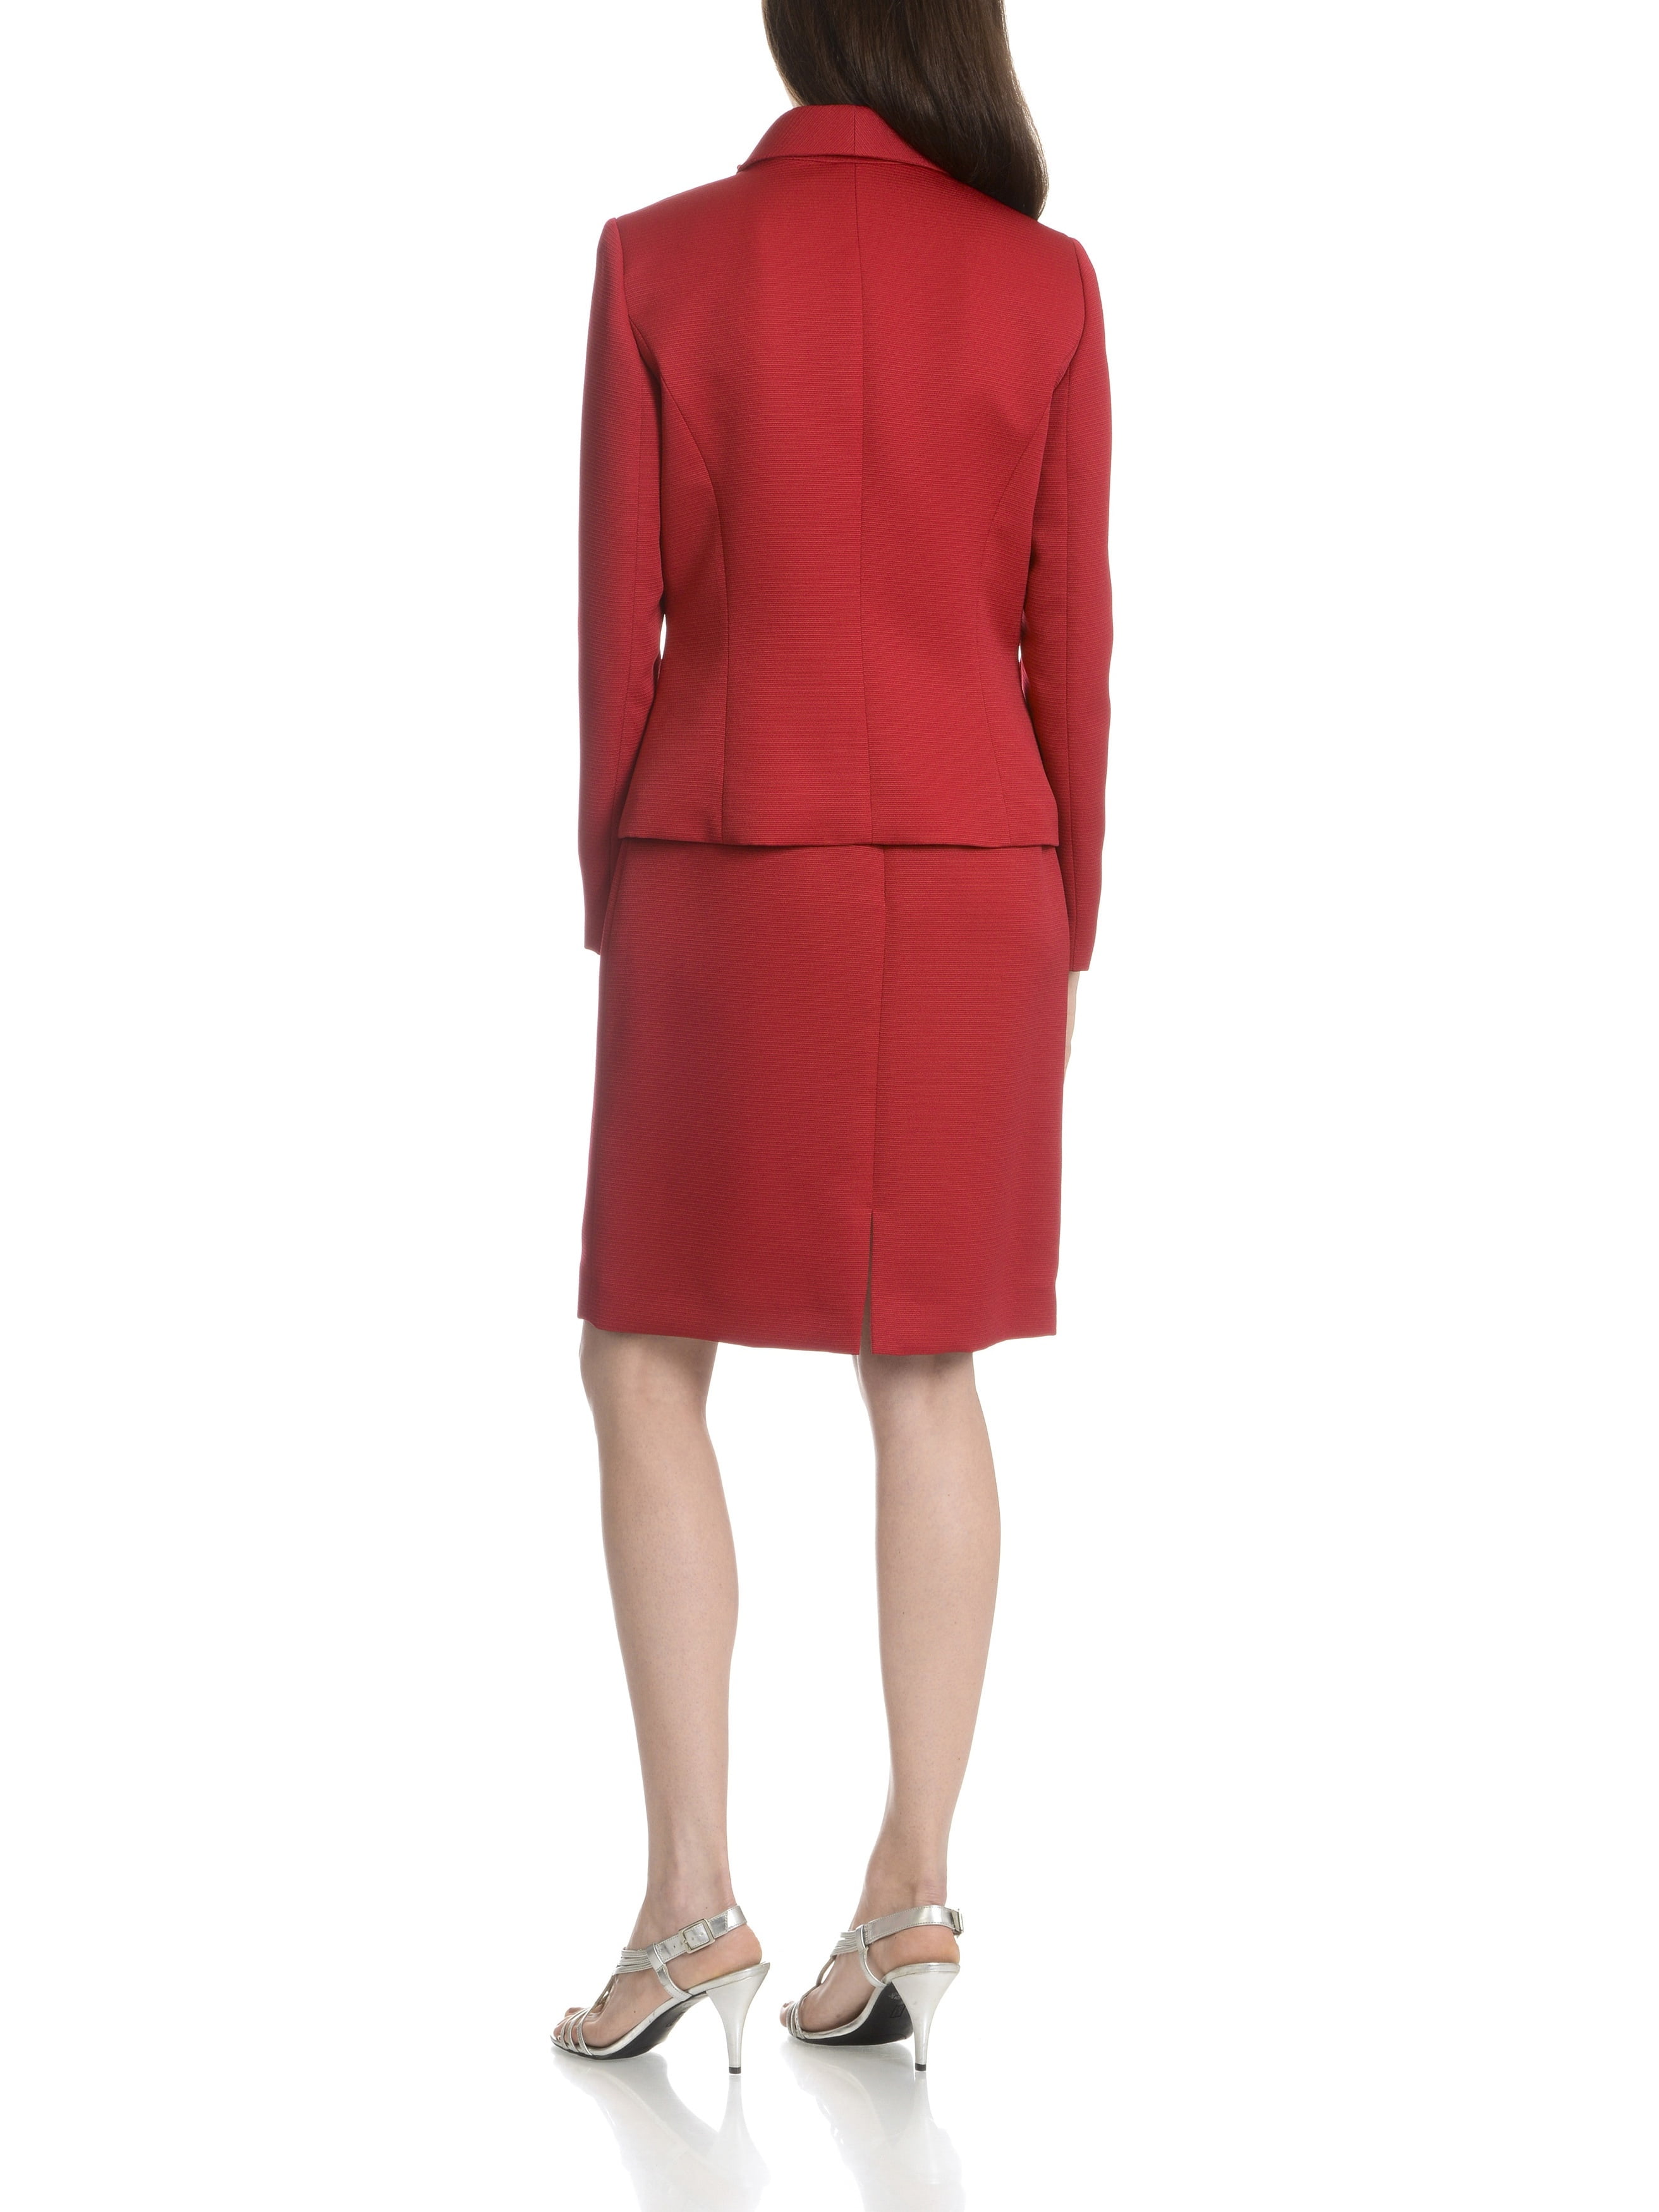 tahari red skirt suit